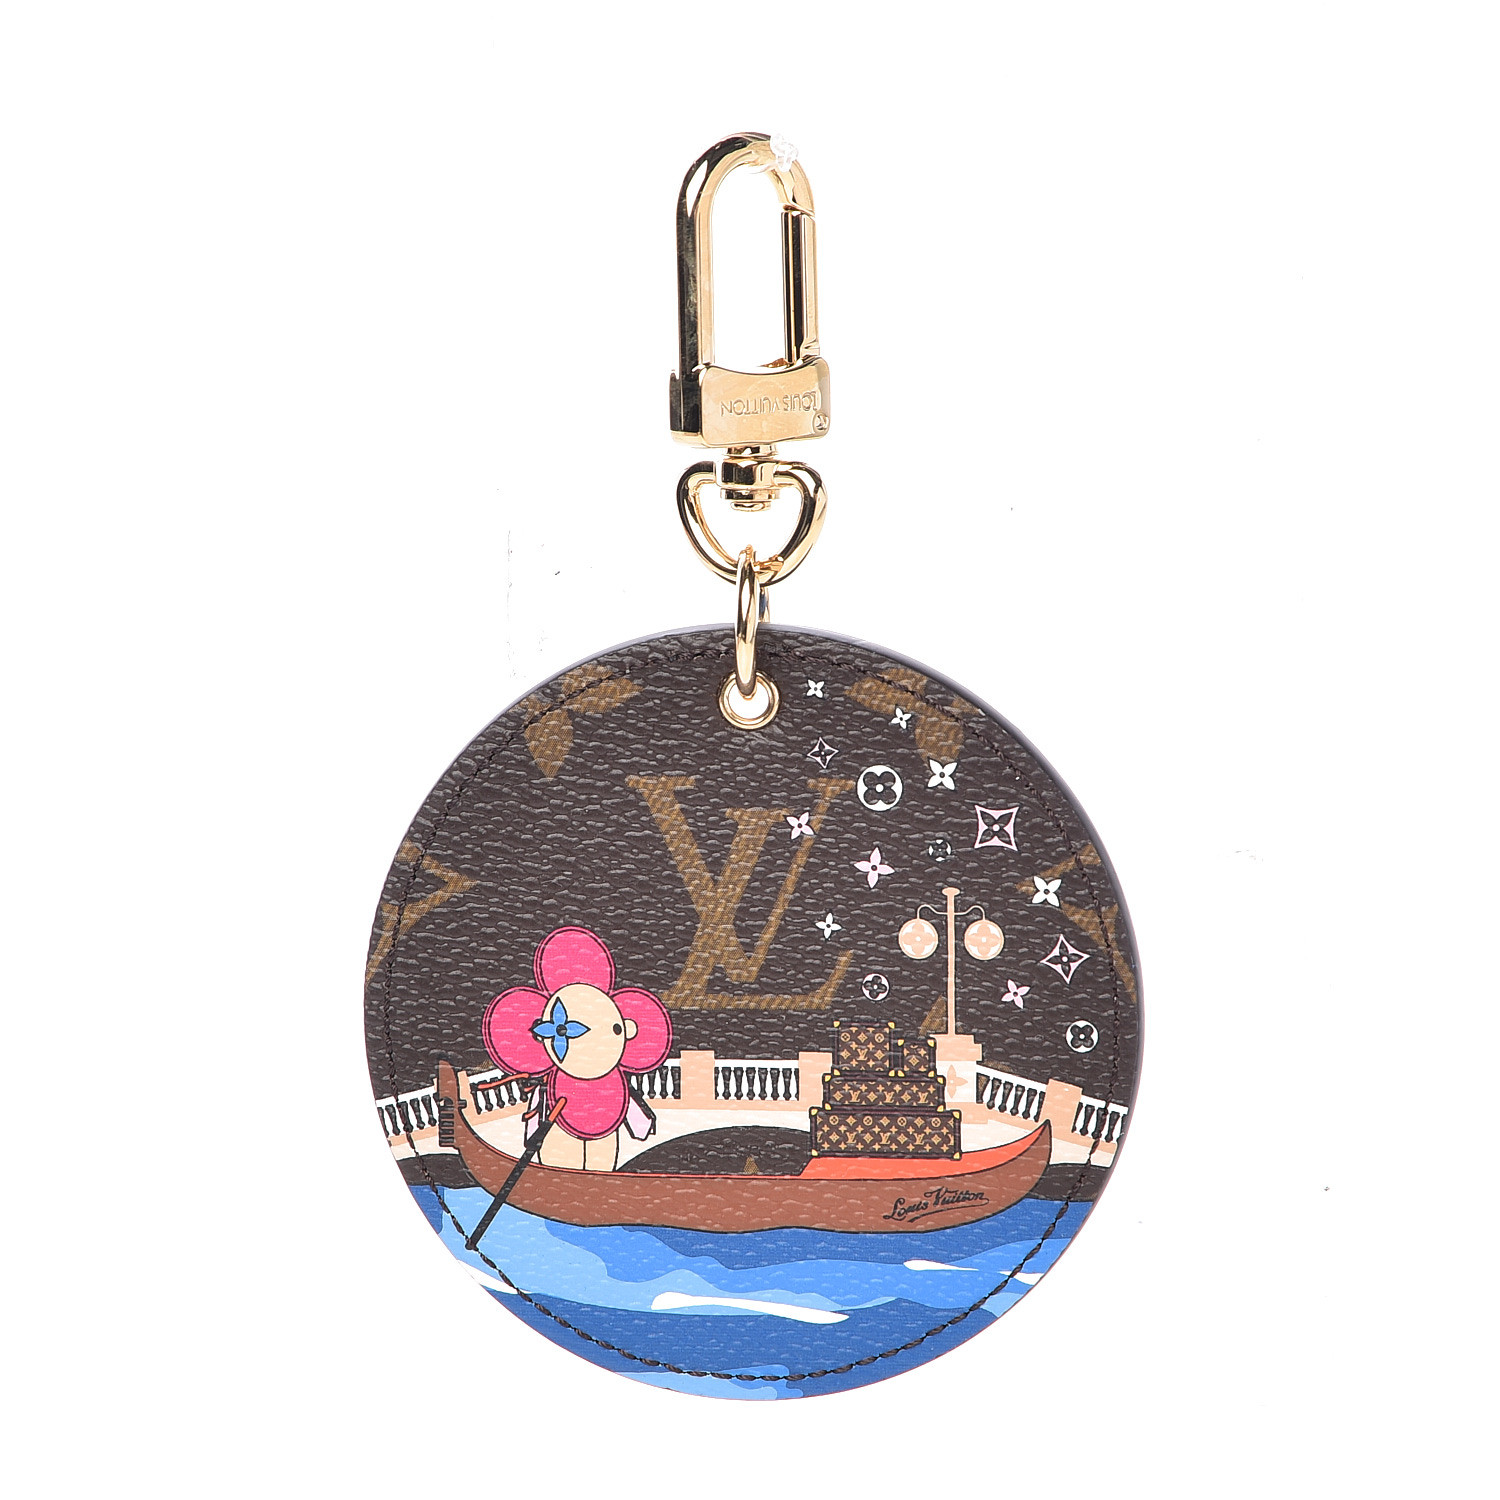 LOUIS VUITTON Monogram Vivienne Venice Xmas Bag Charm Key Holder 485101